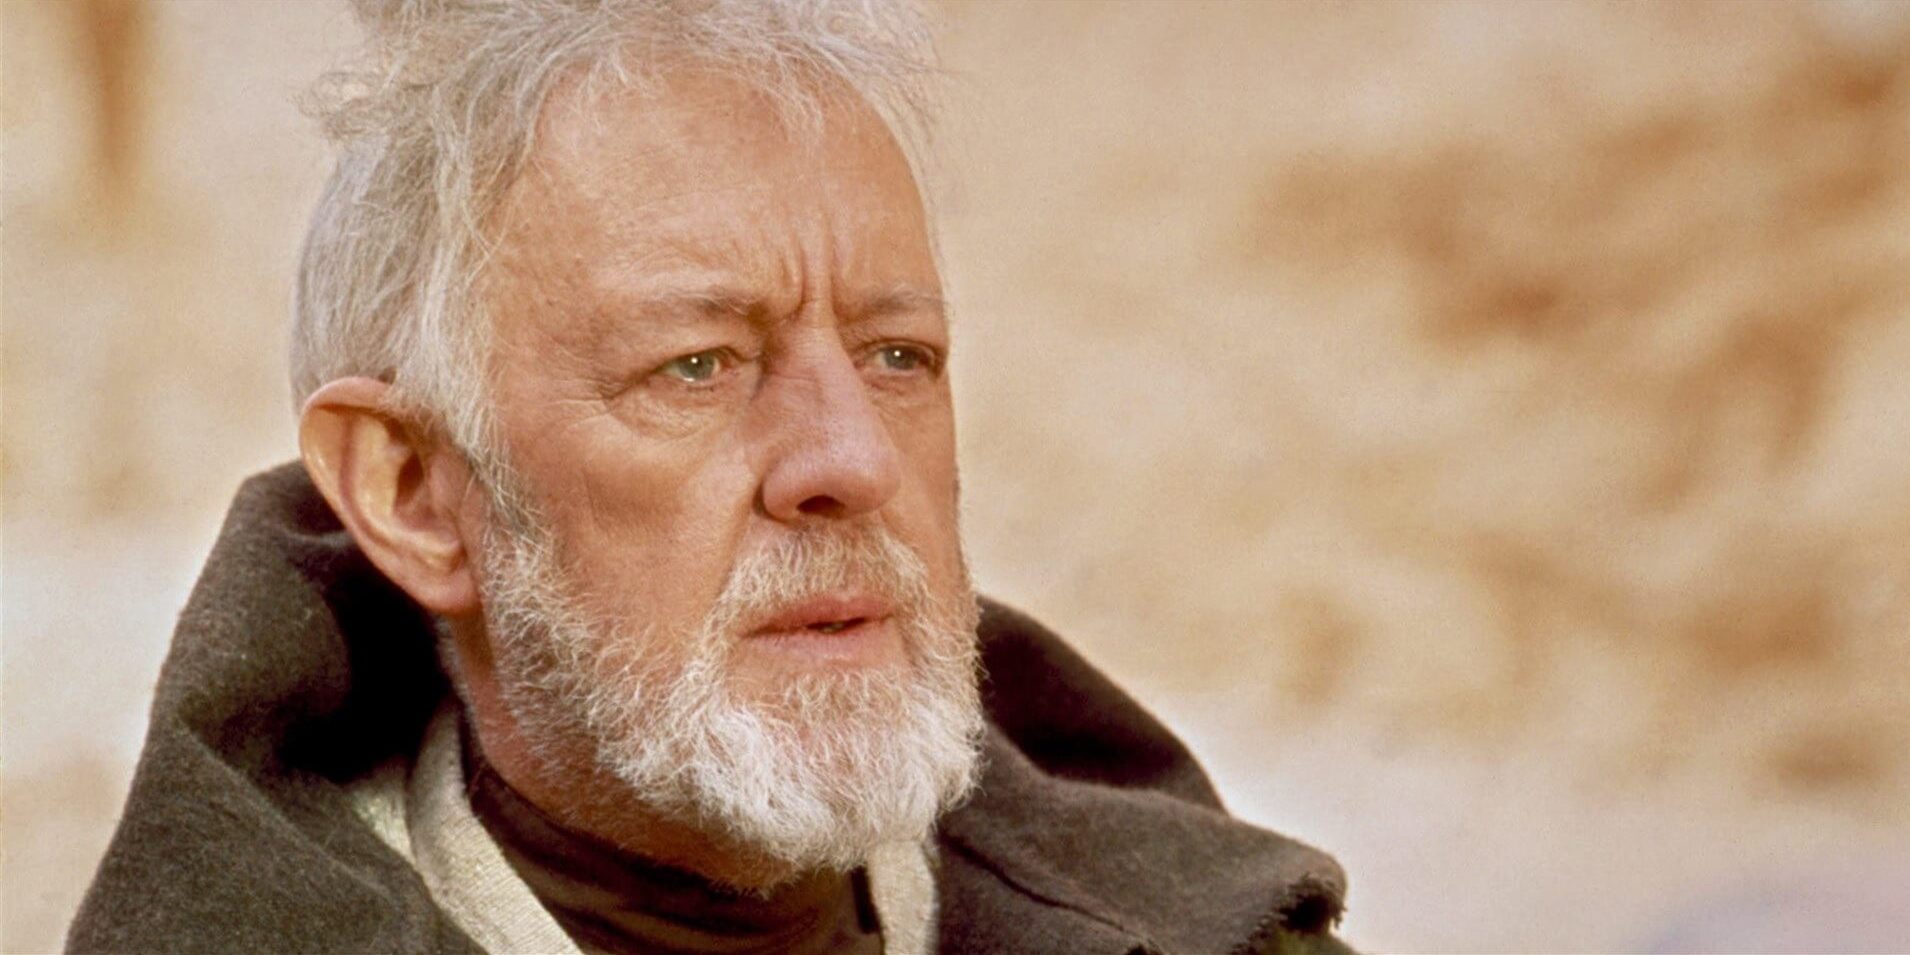 Disney wstrzymao prace nad miniserialem Obi-Wan Kenobi